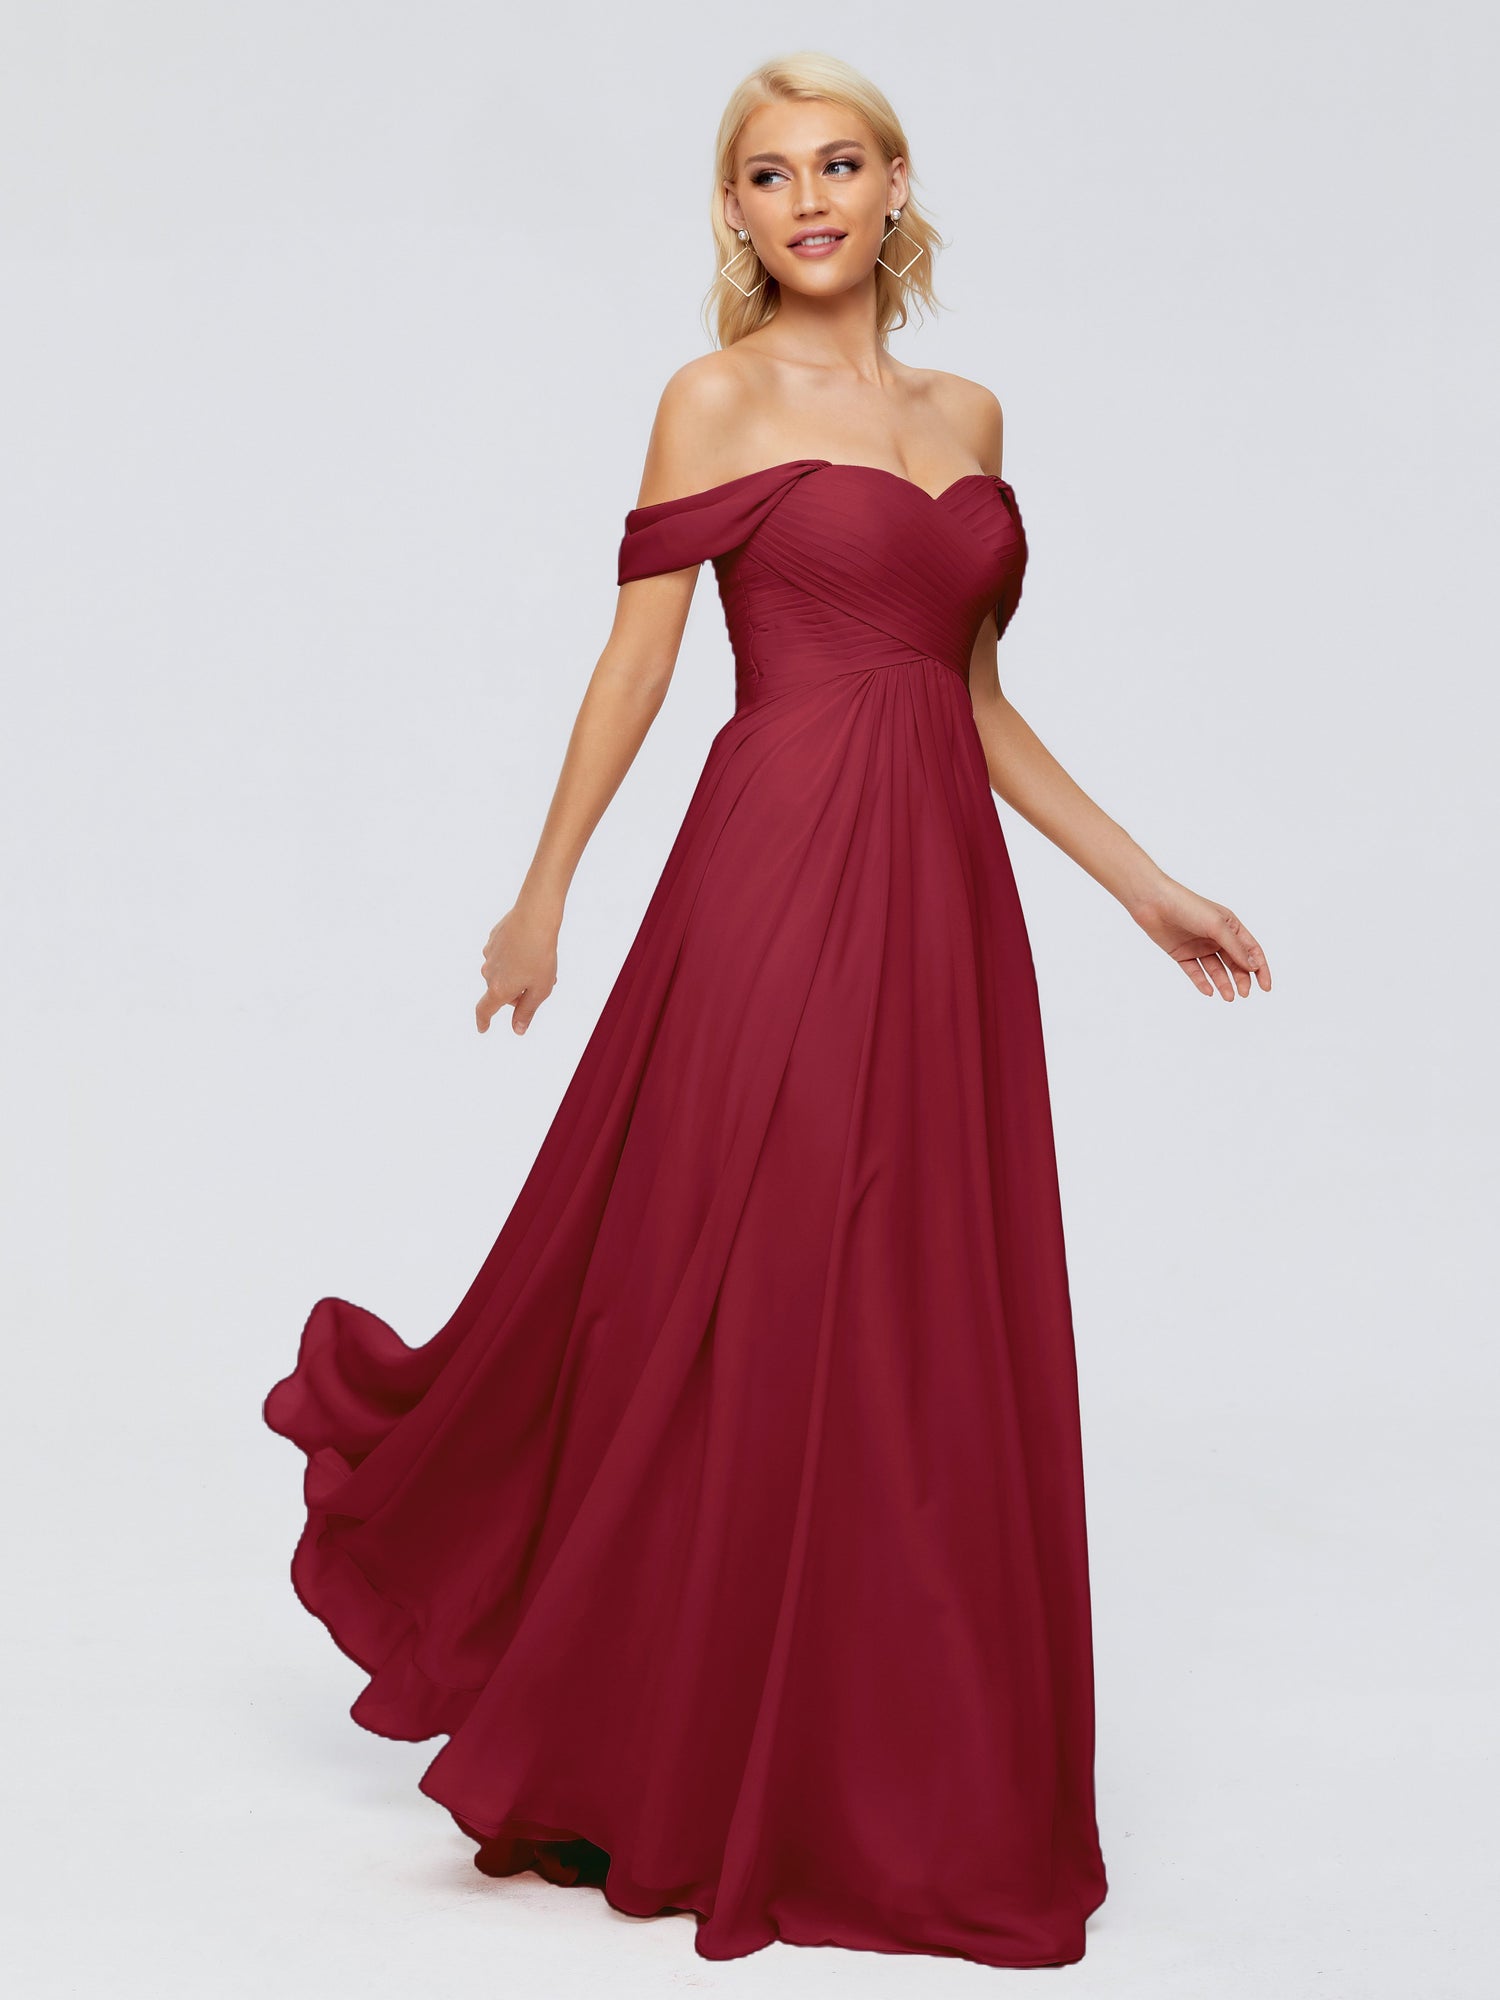 Off Shoulder Flowy Burgundy Red Dress, Bridesmaid, Wedding Guest